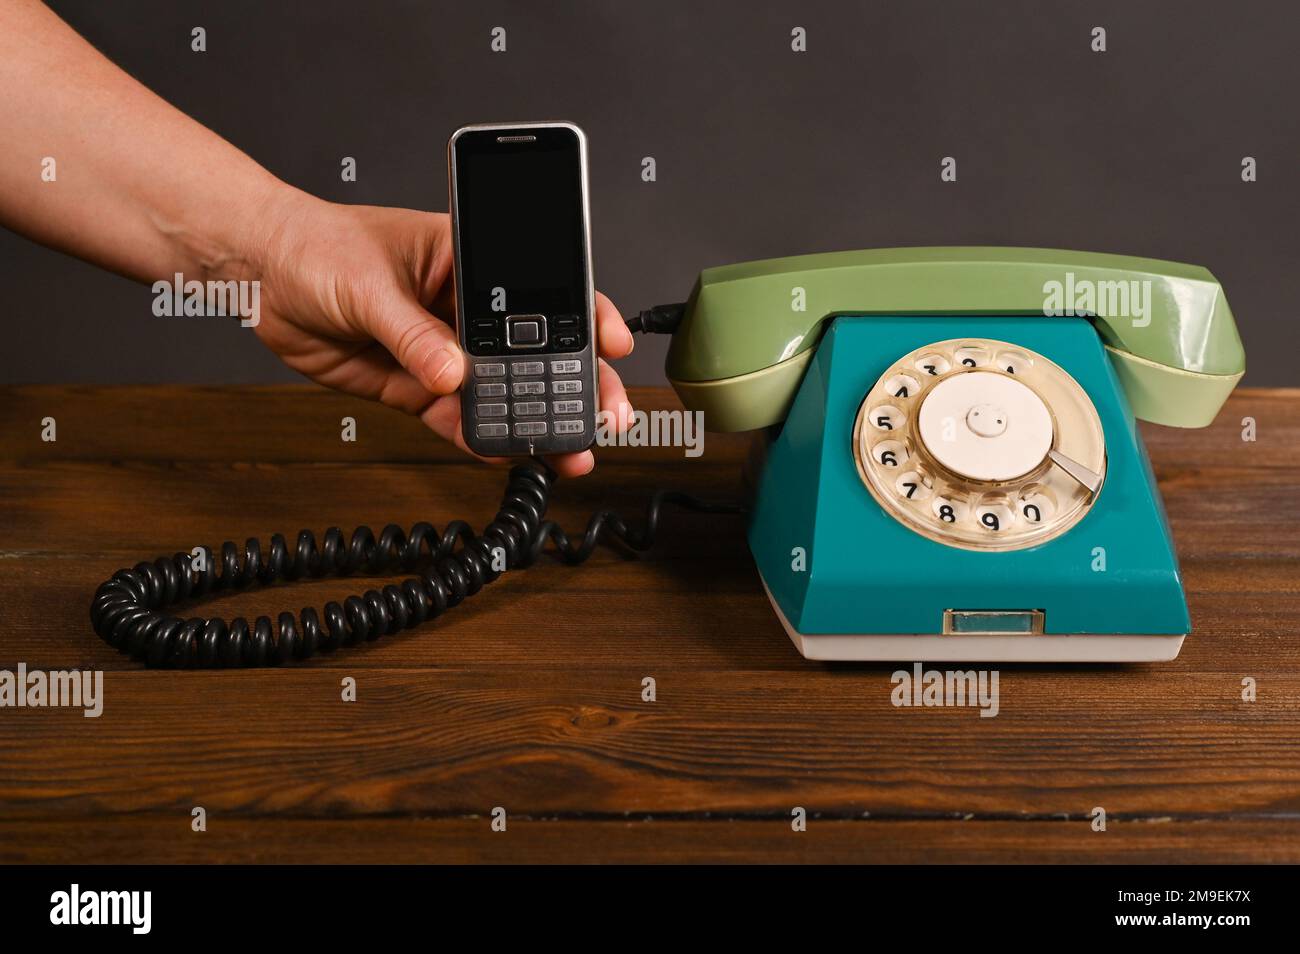 Ein altes Handy mit Knopfdruck in der Hand einer Frau neben einem alten Wähltelefon. Stockfoto